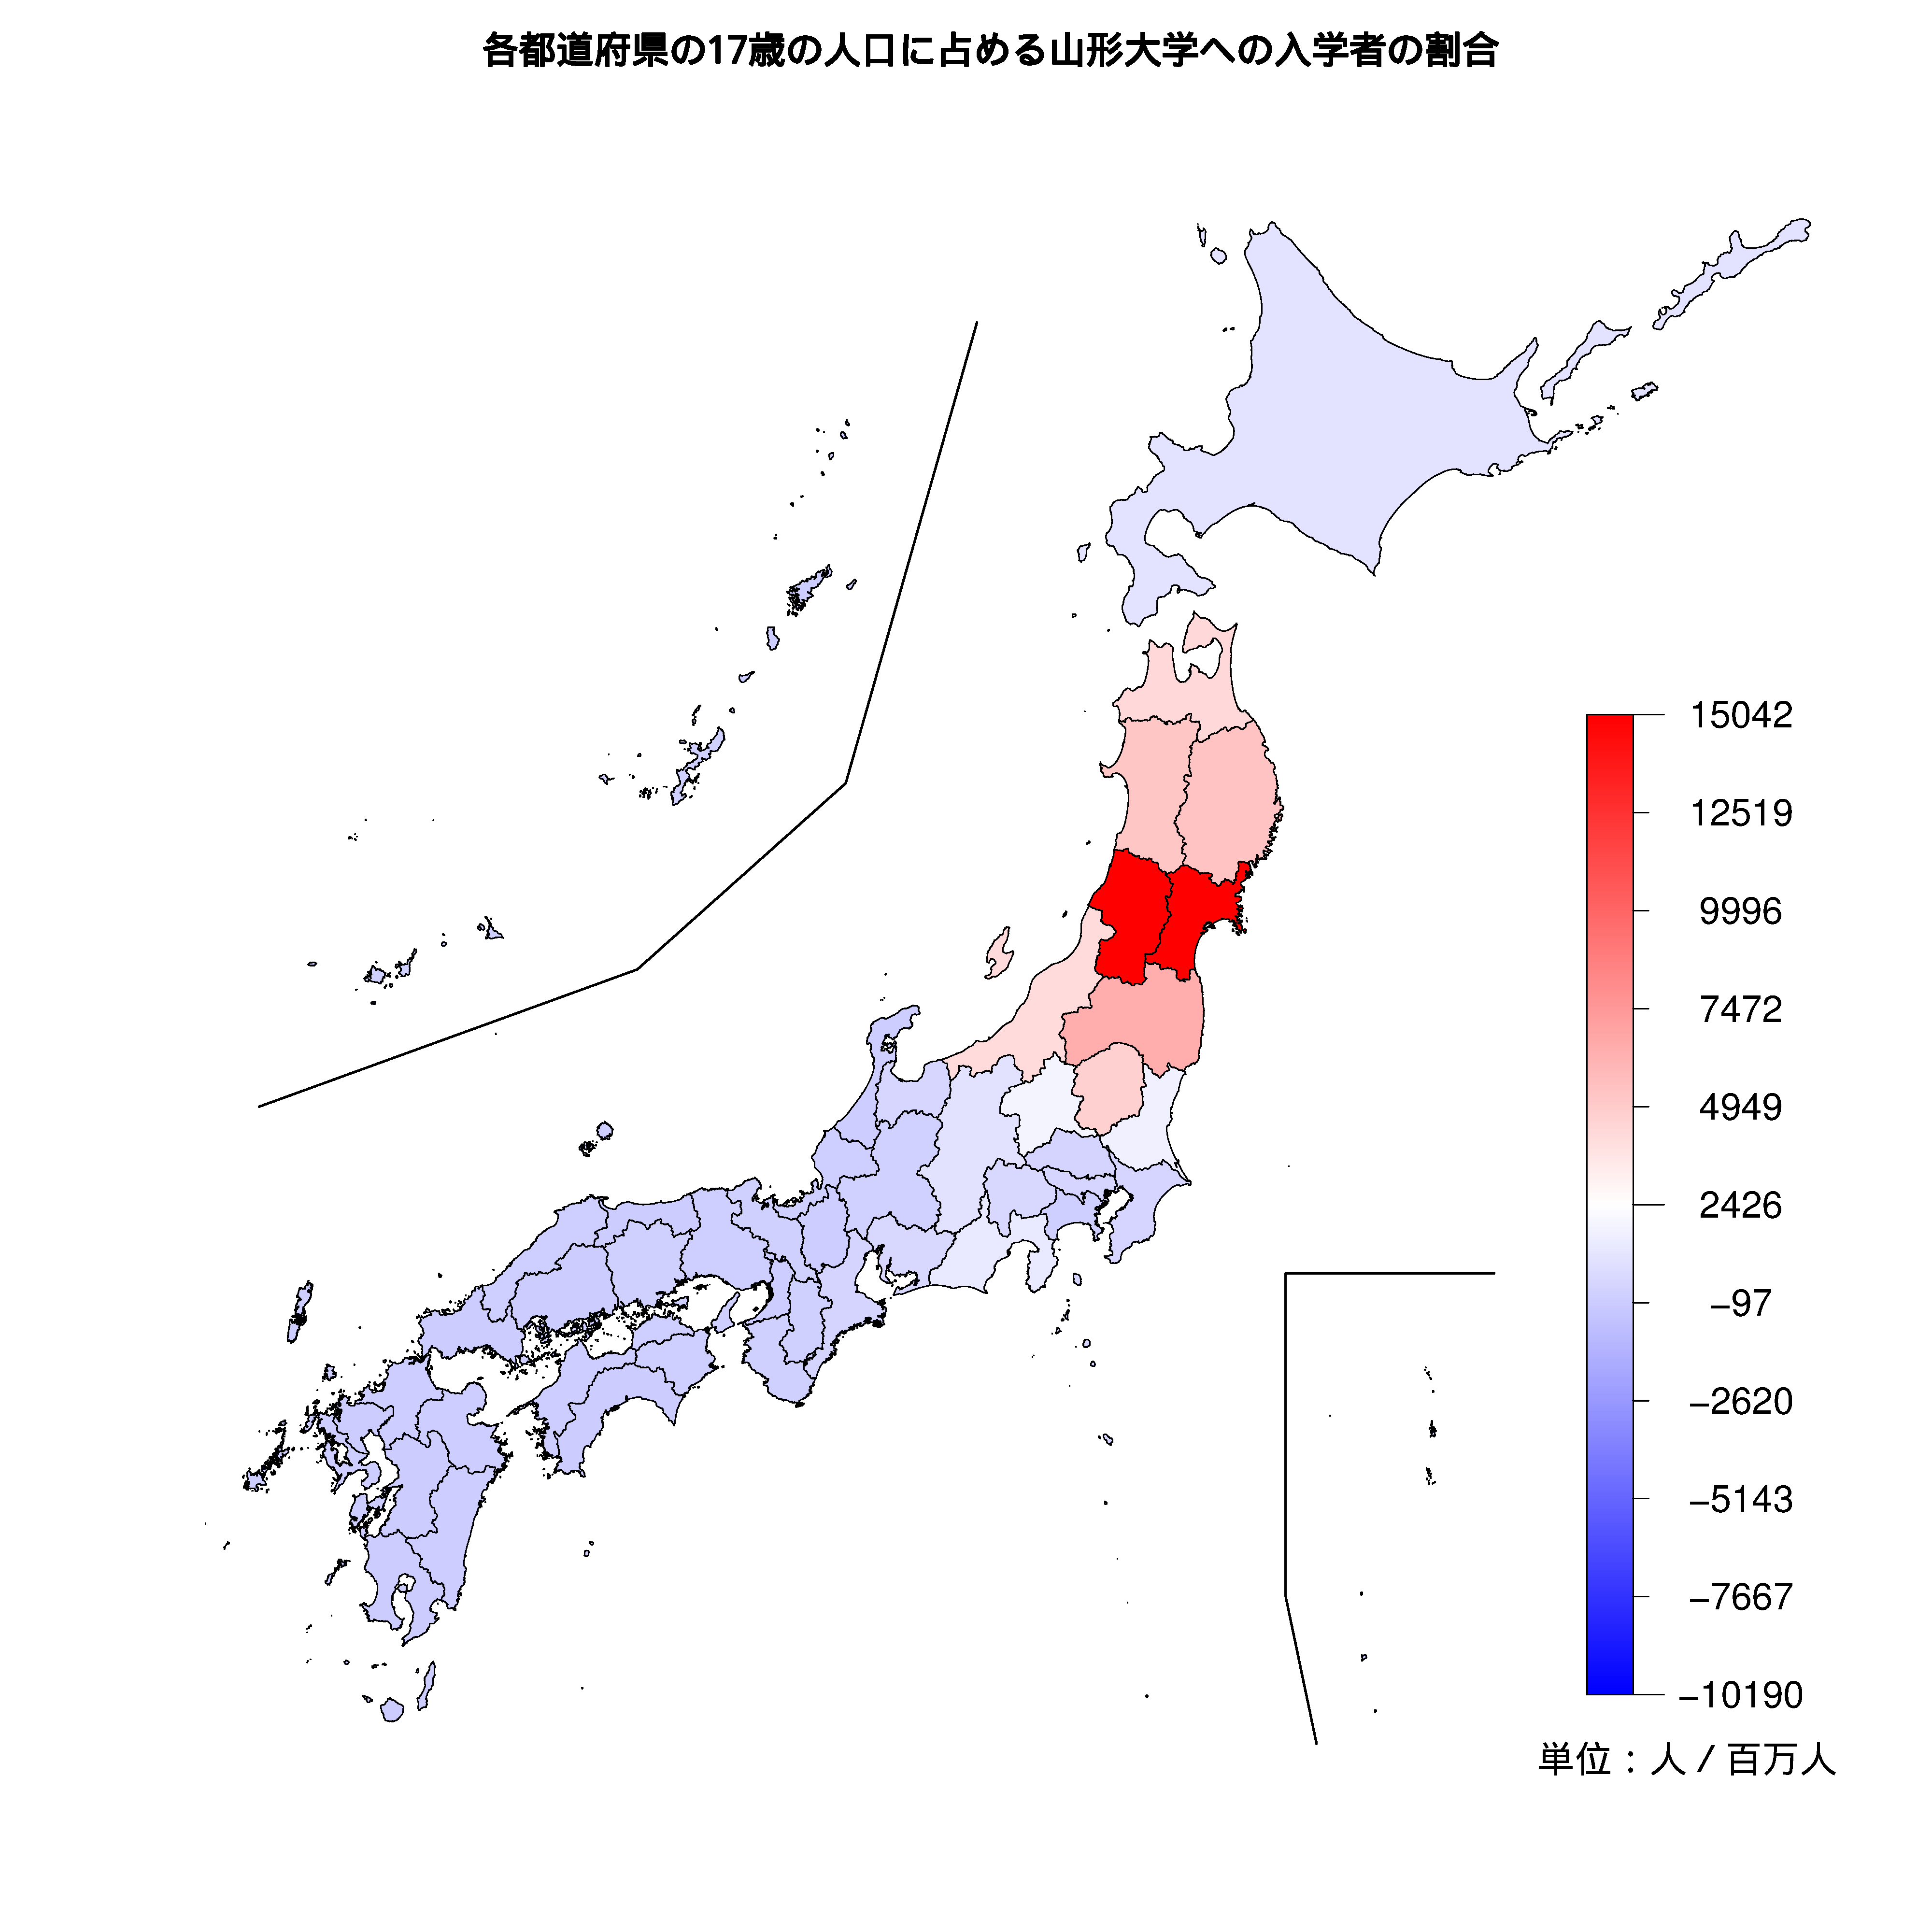 山形大学への入学者が多い都道府県の色分け地図